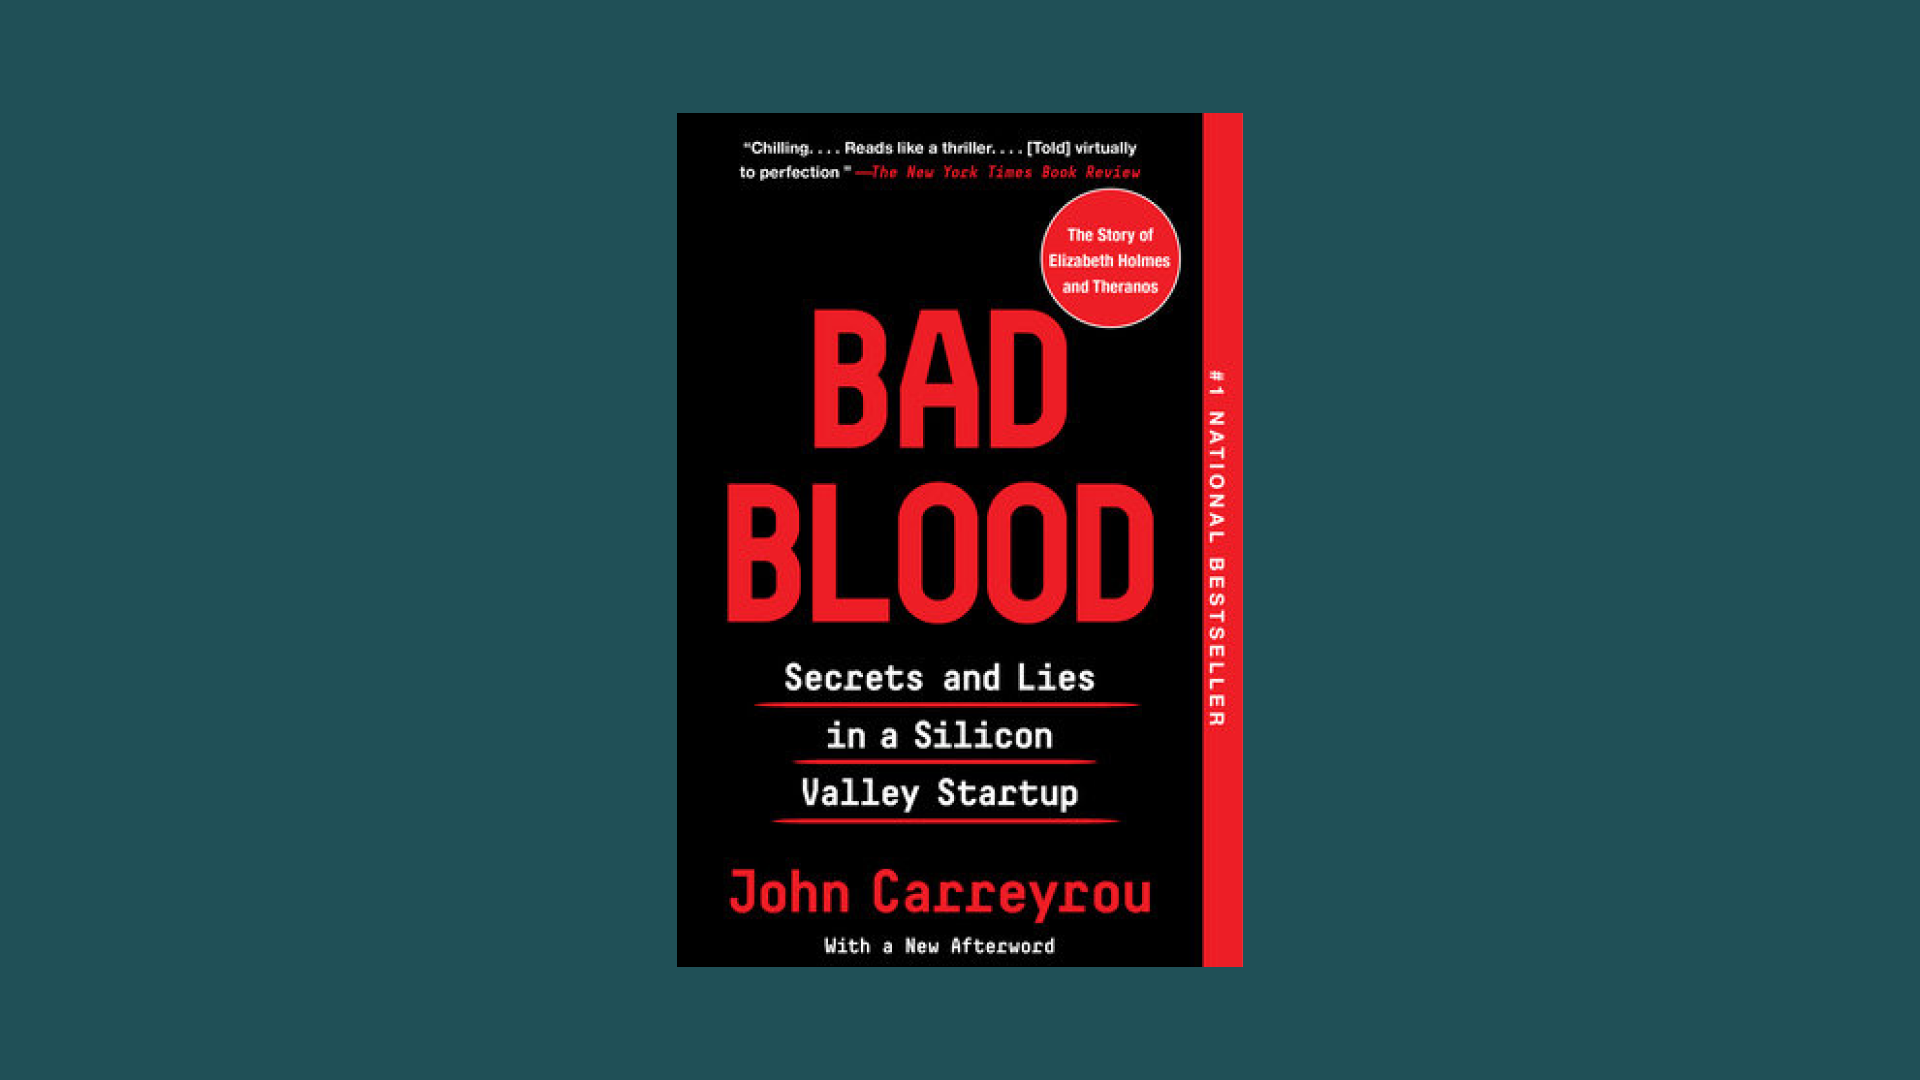 “Bad Blood” by John Carreyrou 